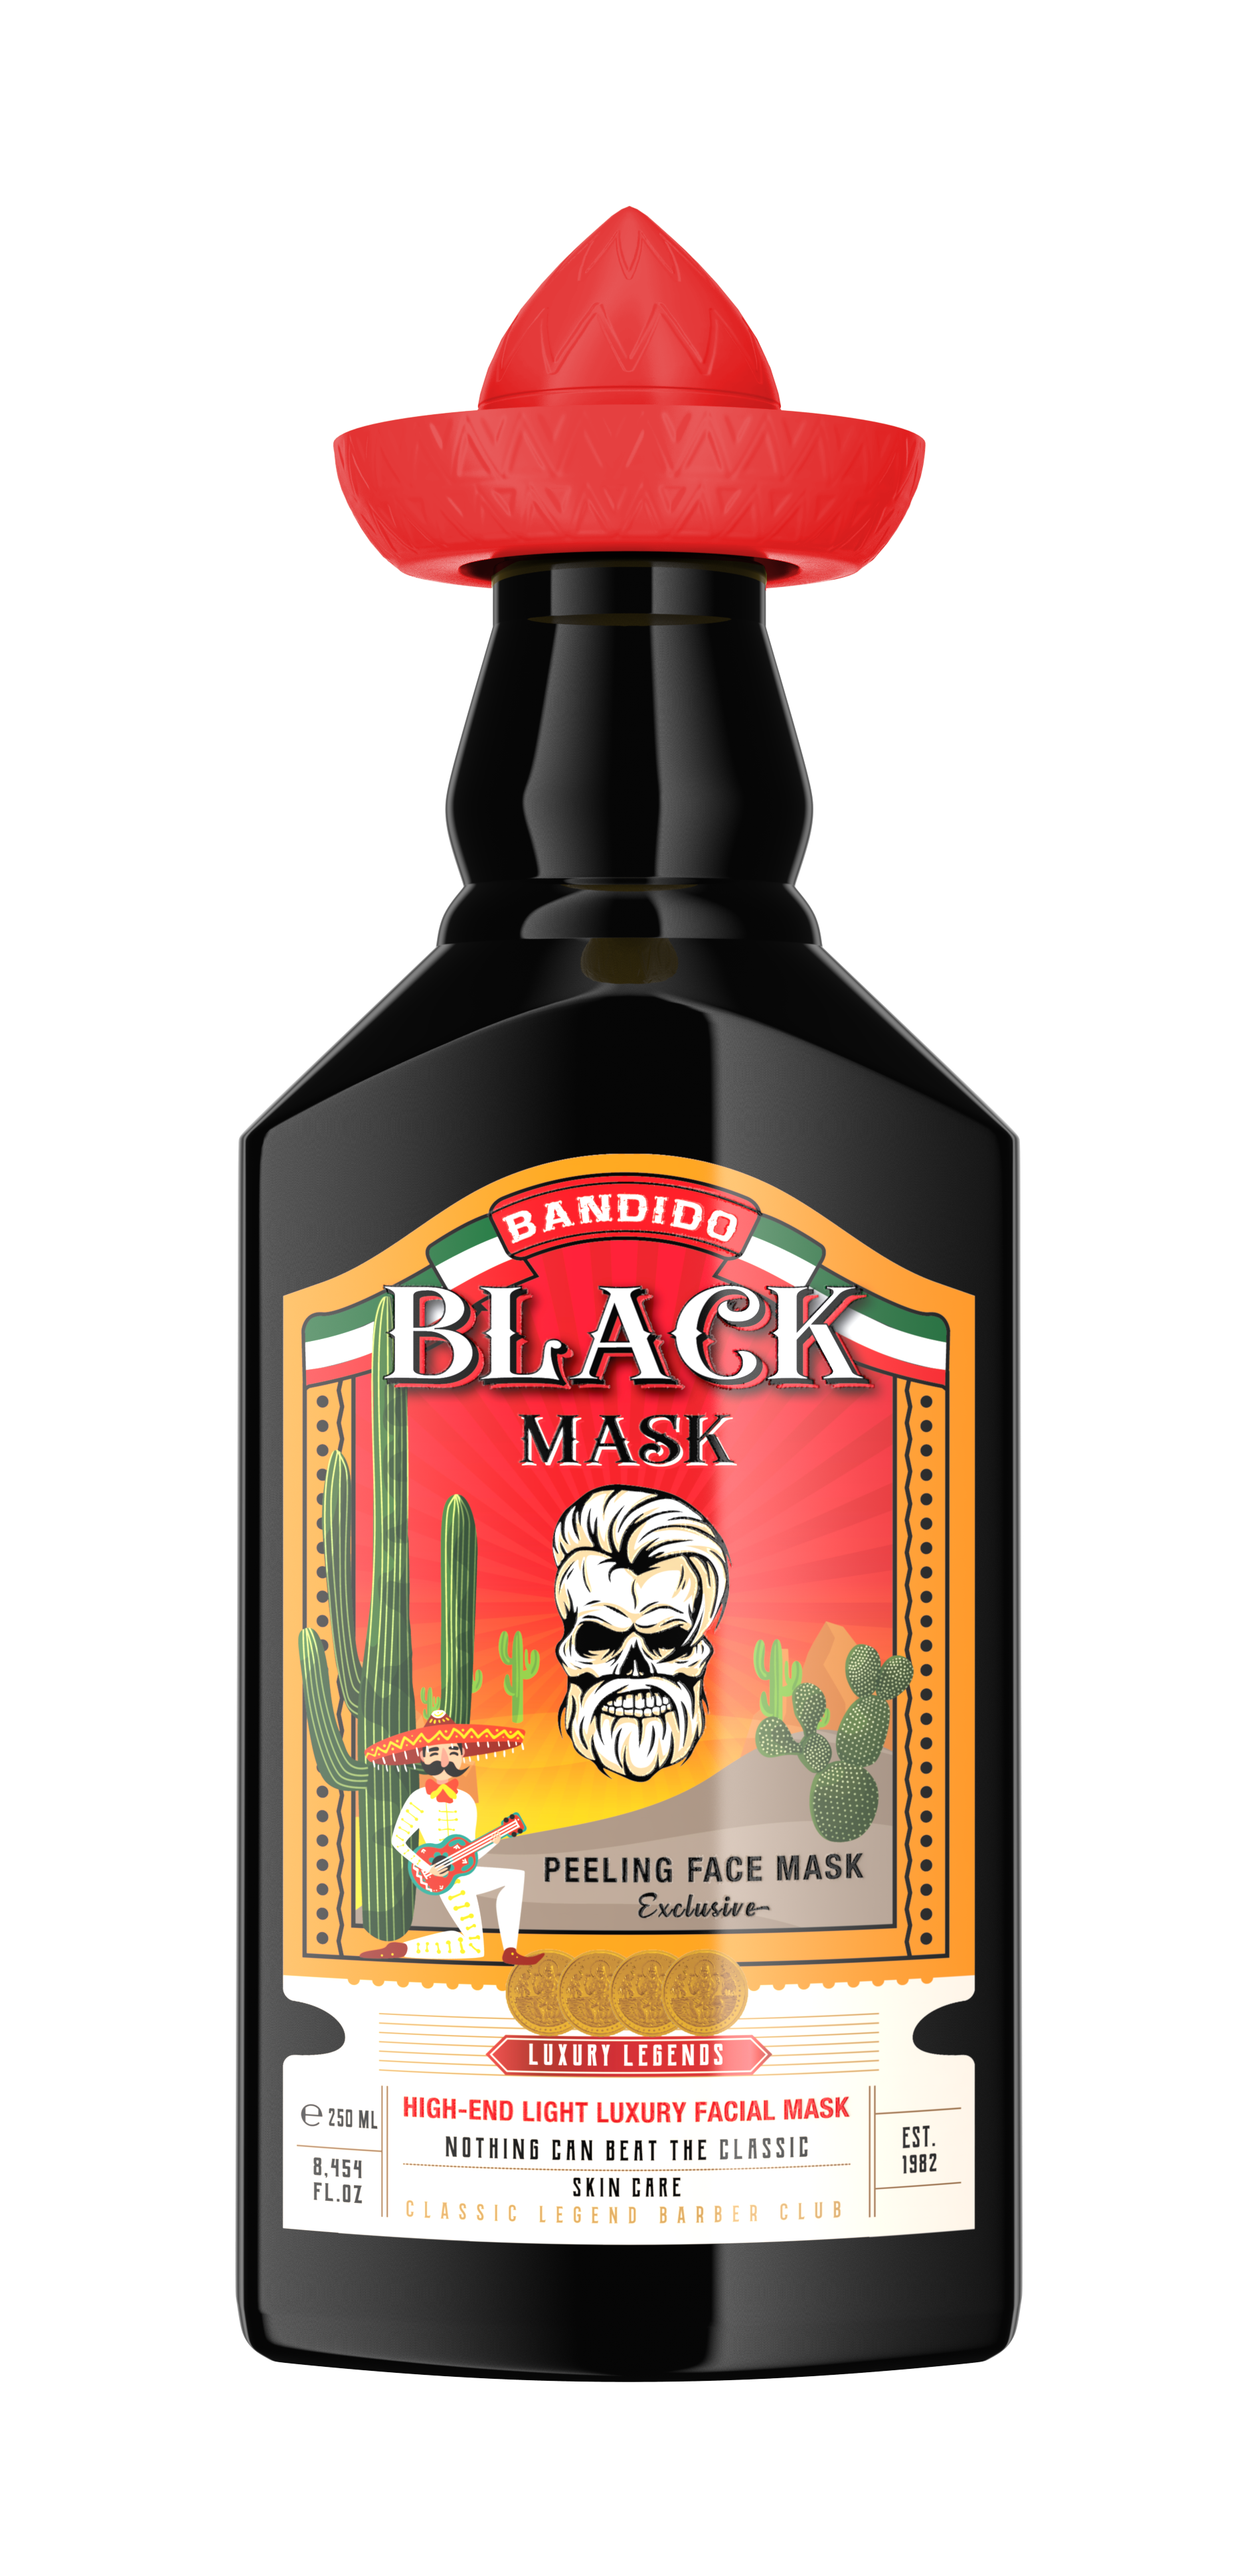 Bandido Black Mask Limited Edition 250ml/8.454fl oz